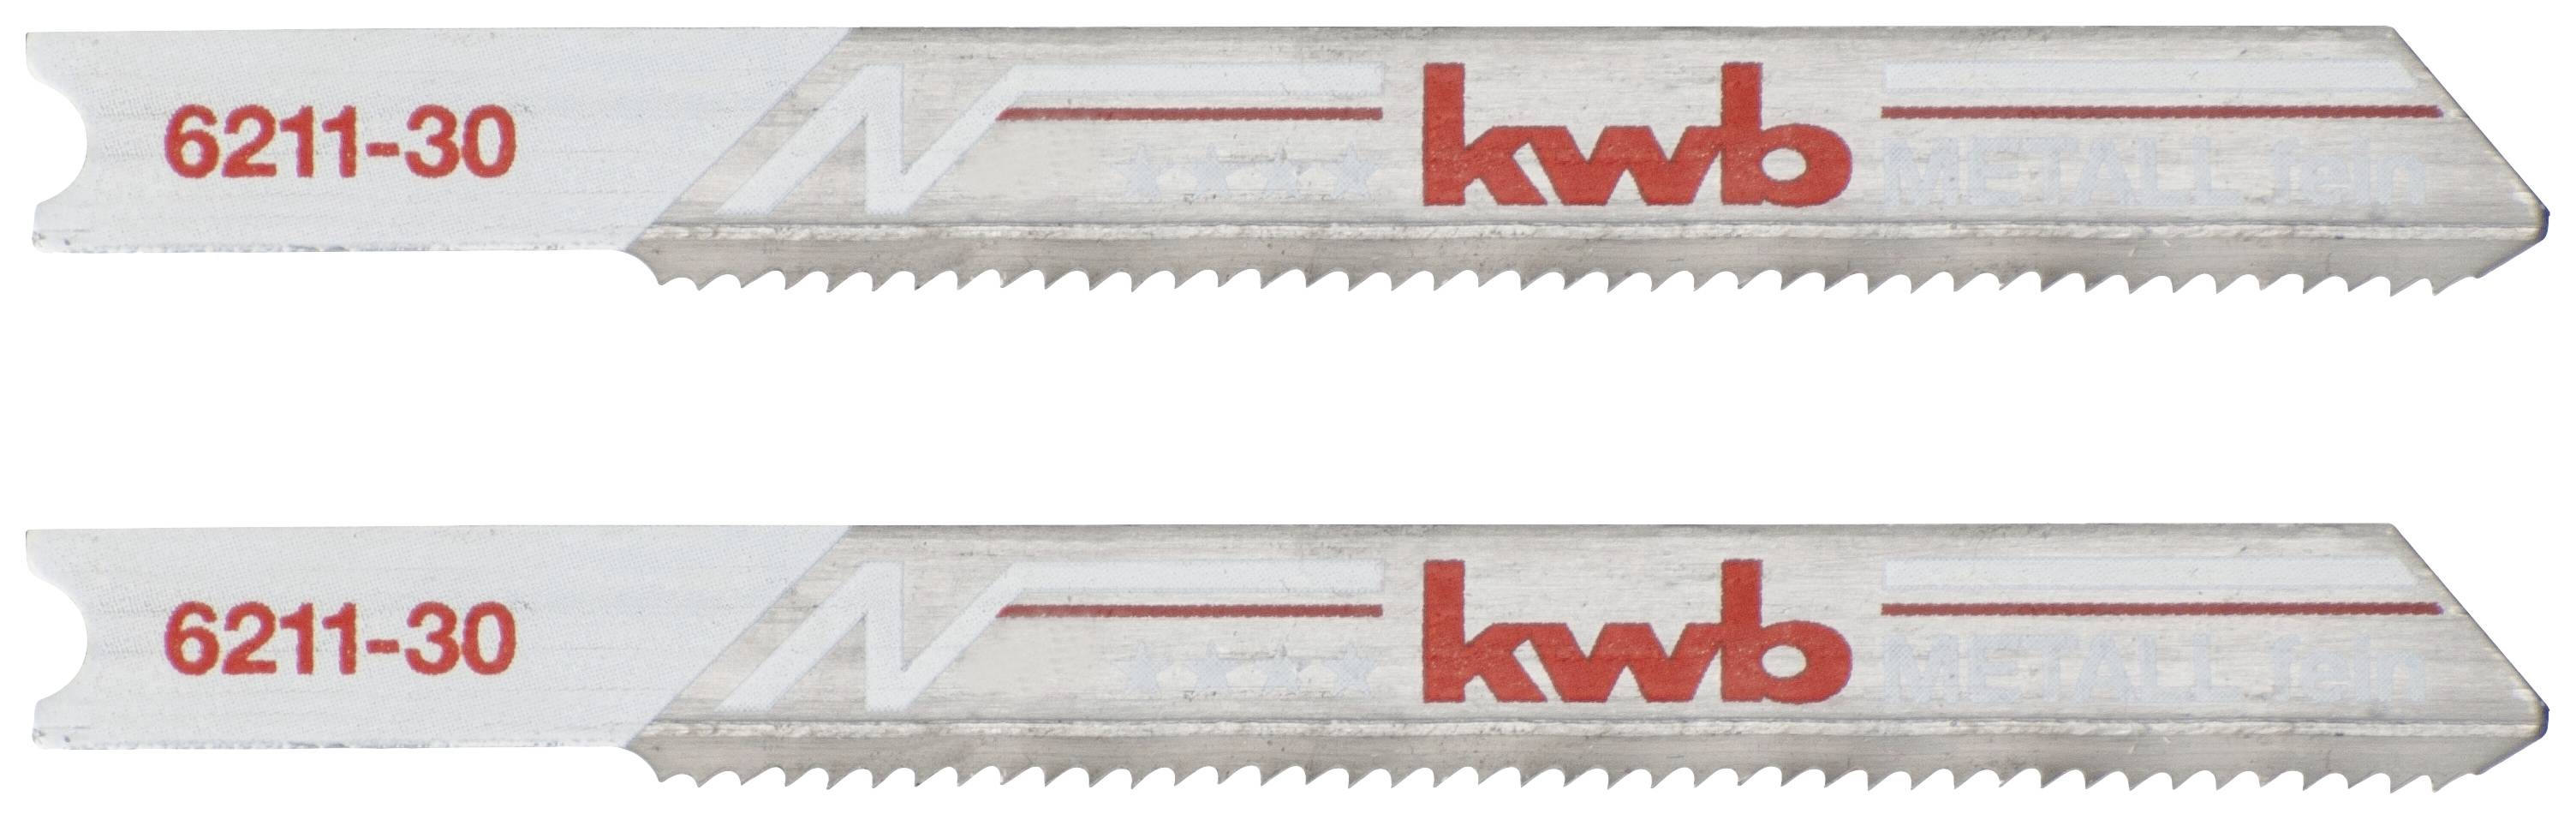 KWB 621130 Stichsägeblätter, Metallbearbeitung, Bi-Metall, 2 x fein 2 St.